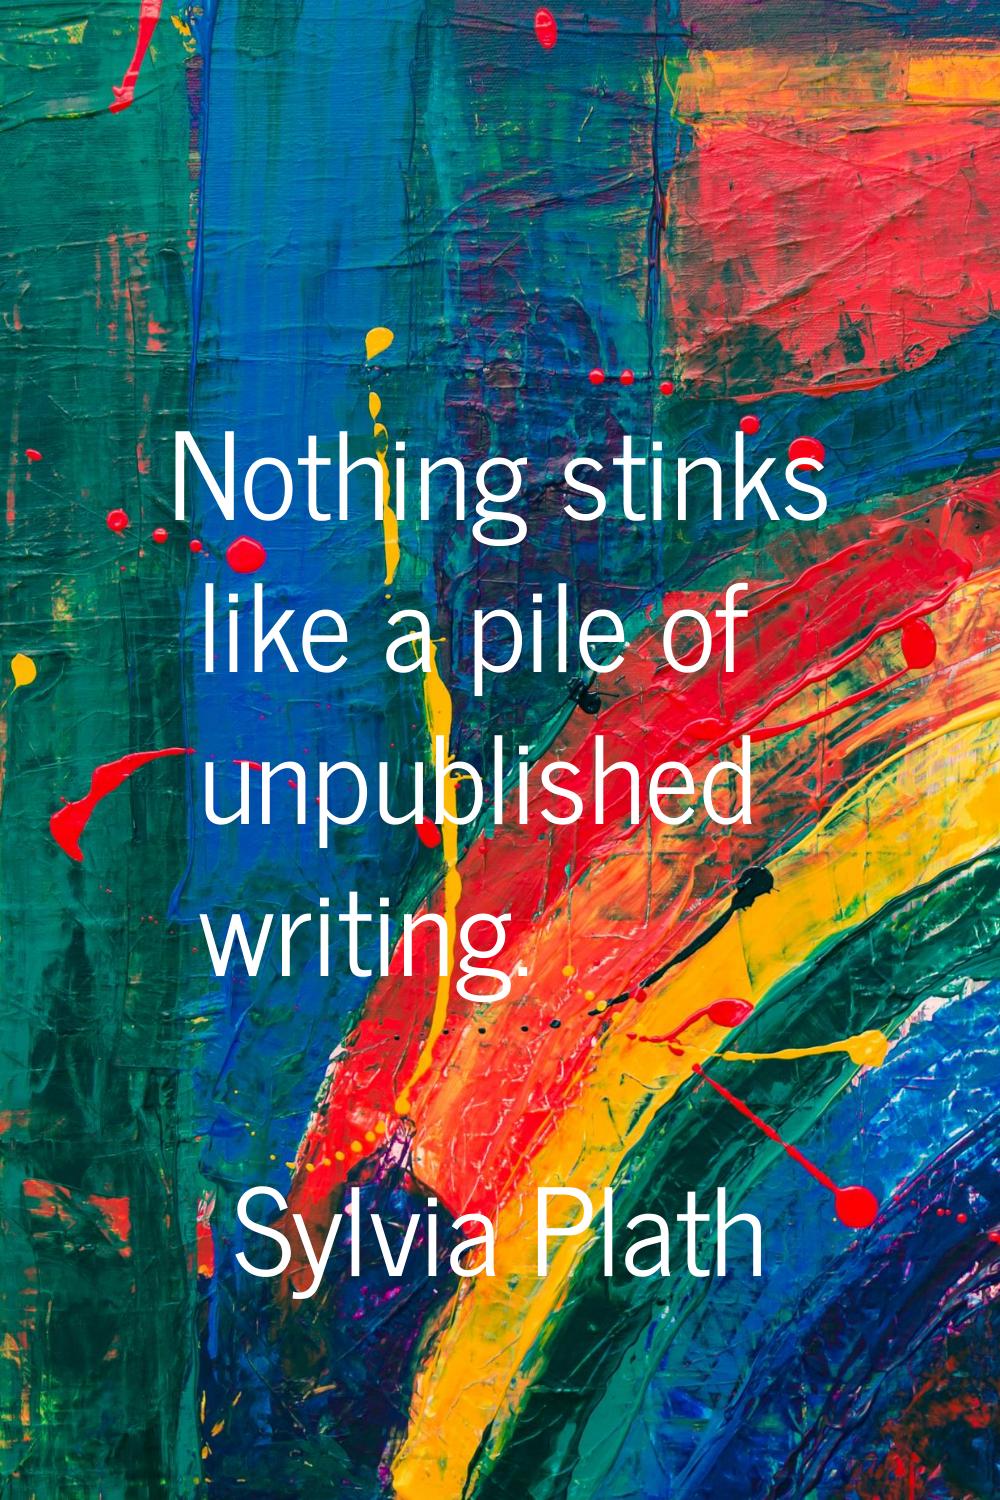 Nothing stinks like a pile of unpublished writing.